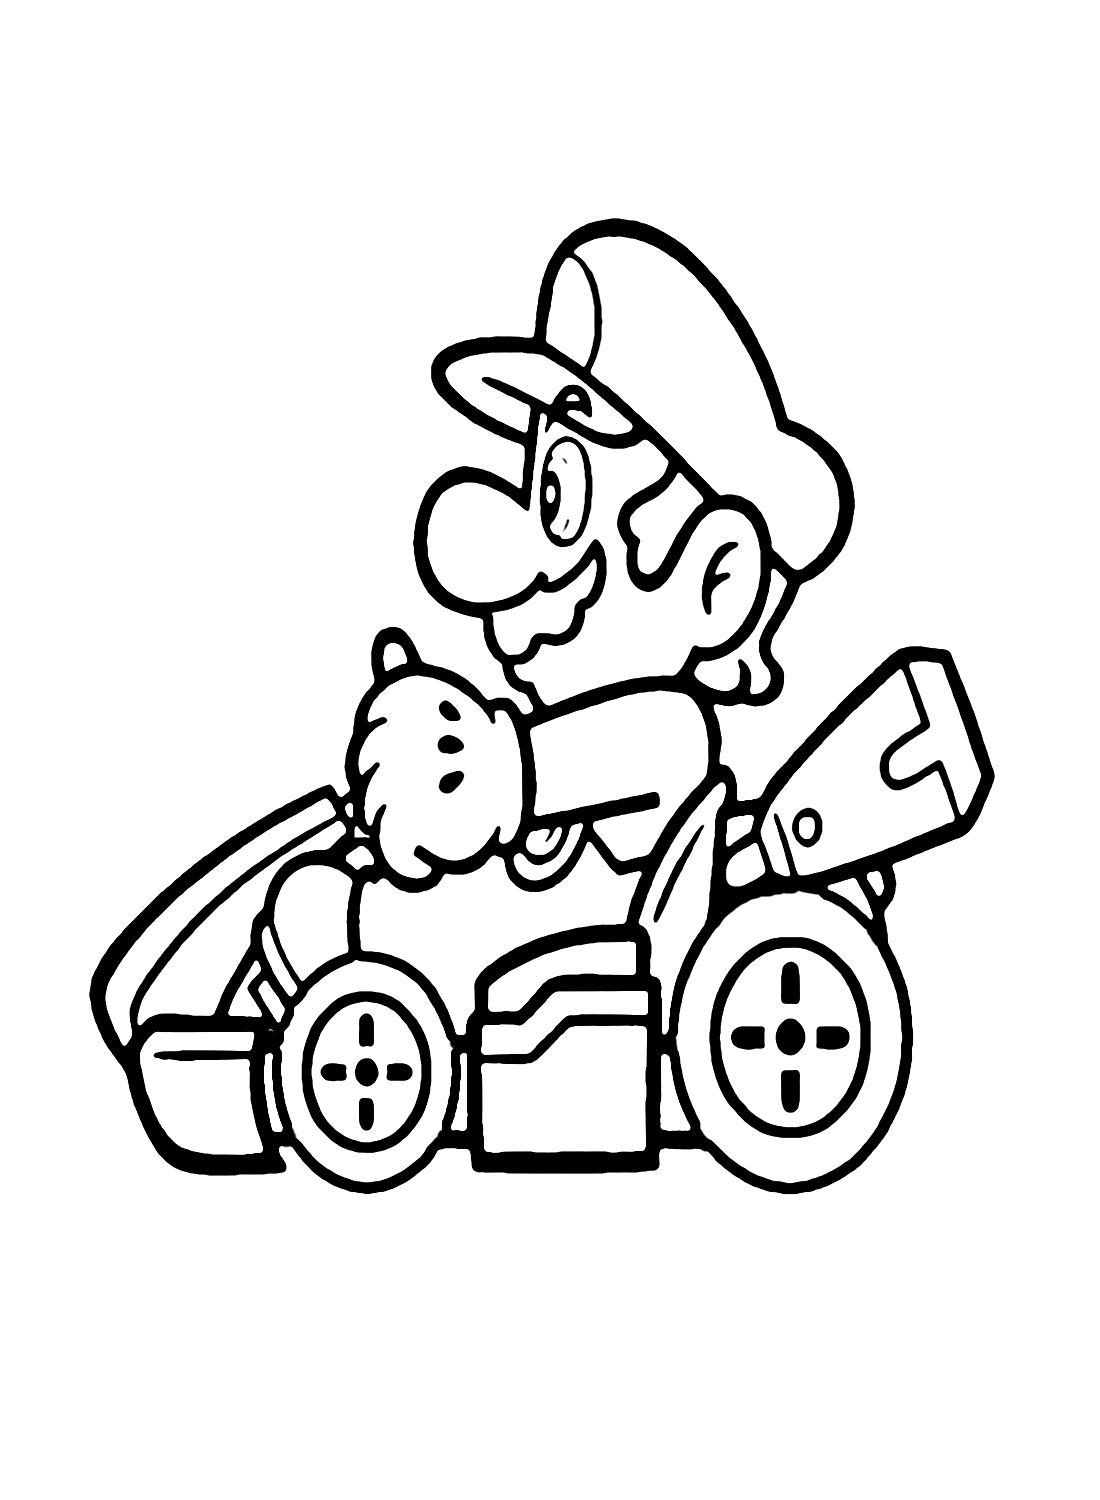 Mario in Mario Kart di Mario Kart